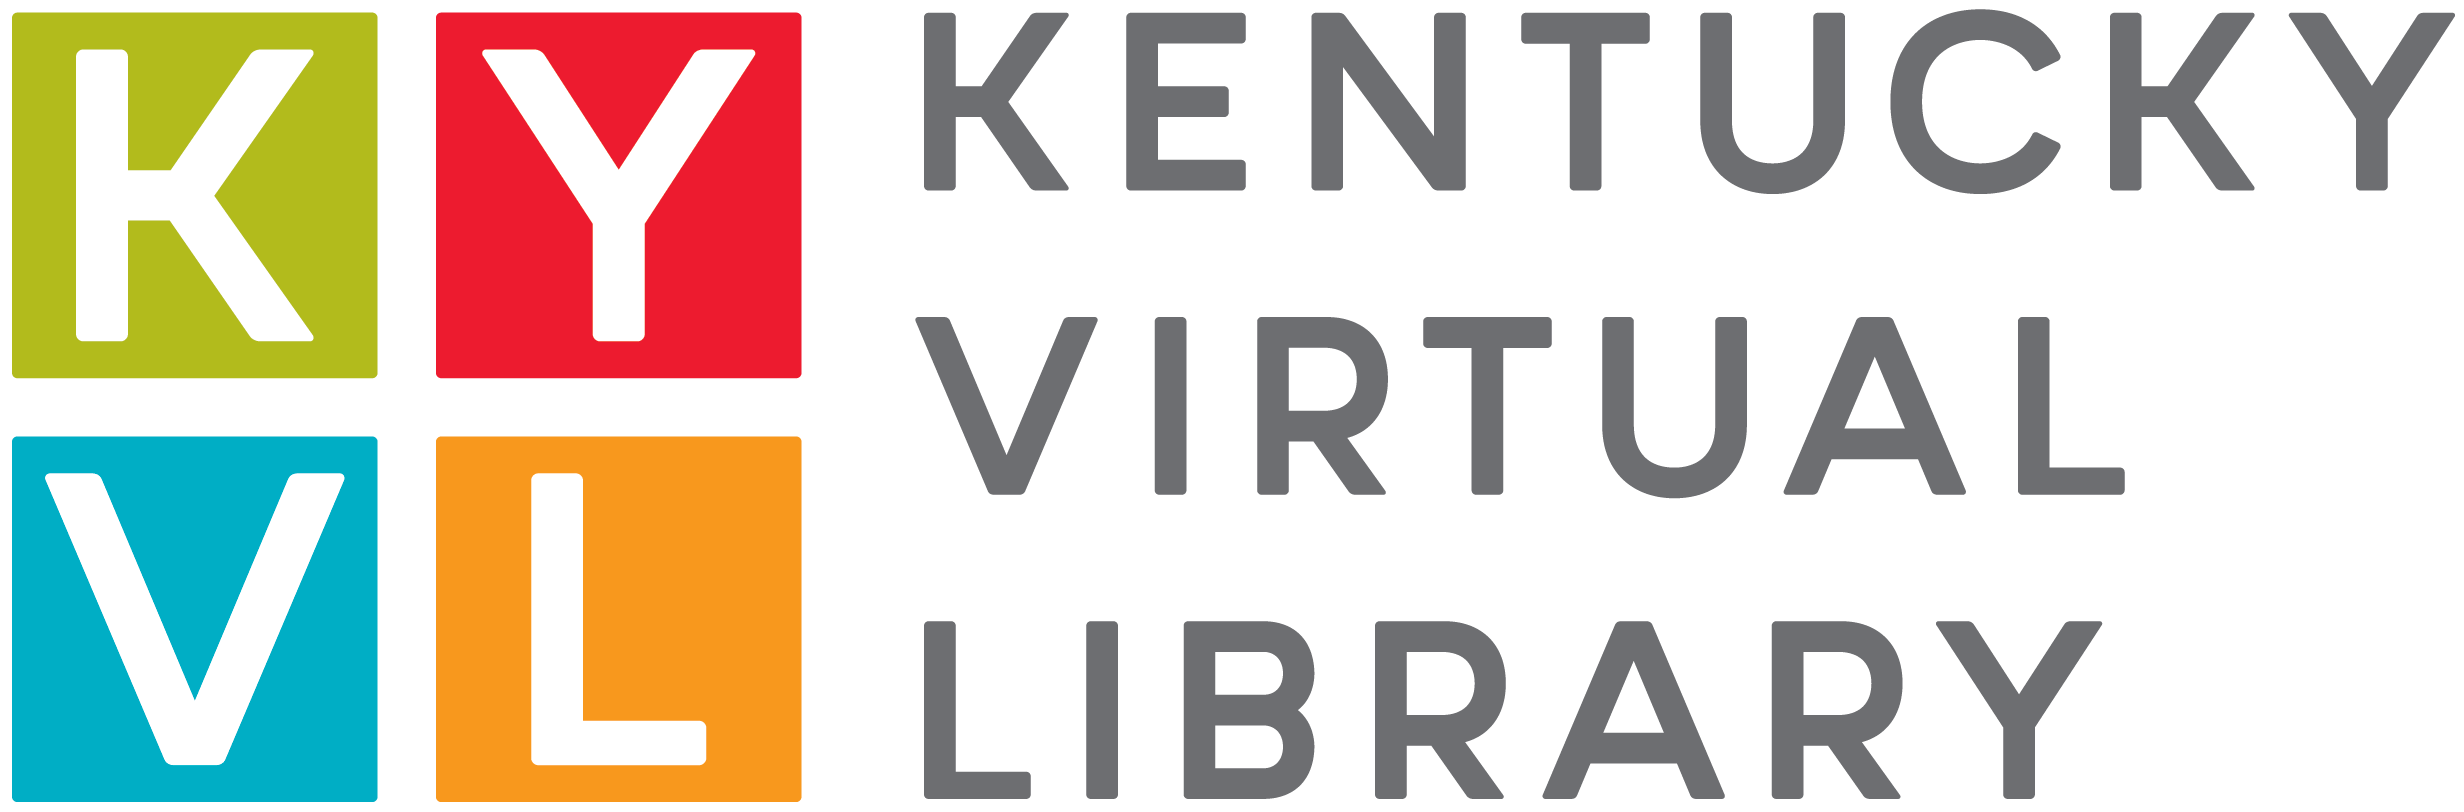 Kentucky Virtual Library Logo 